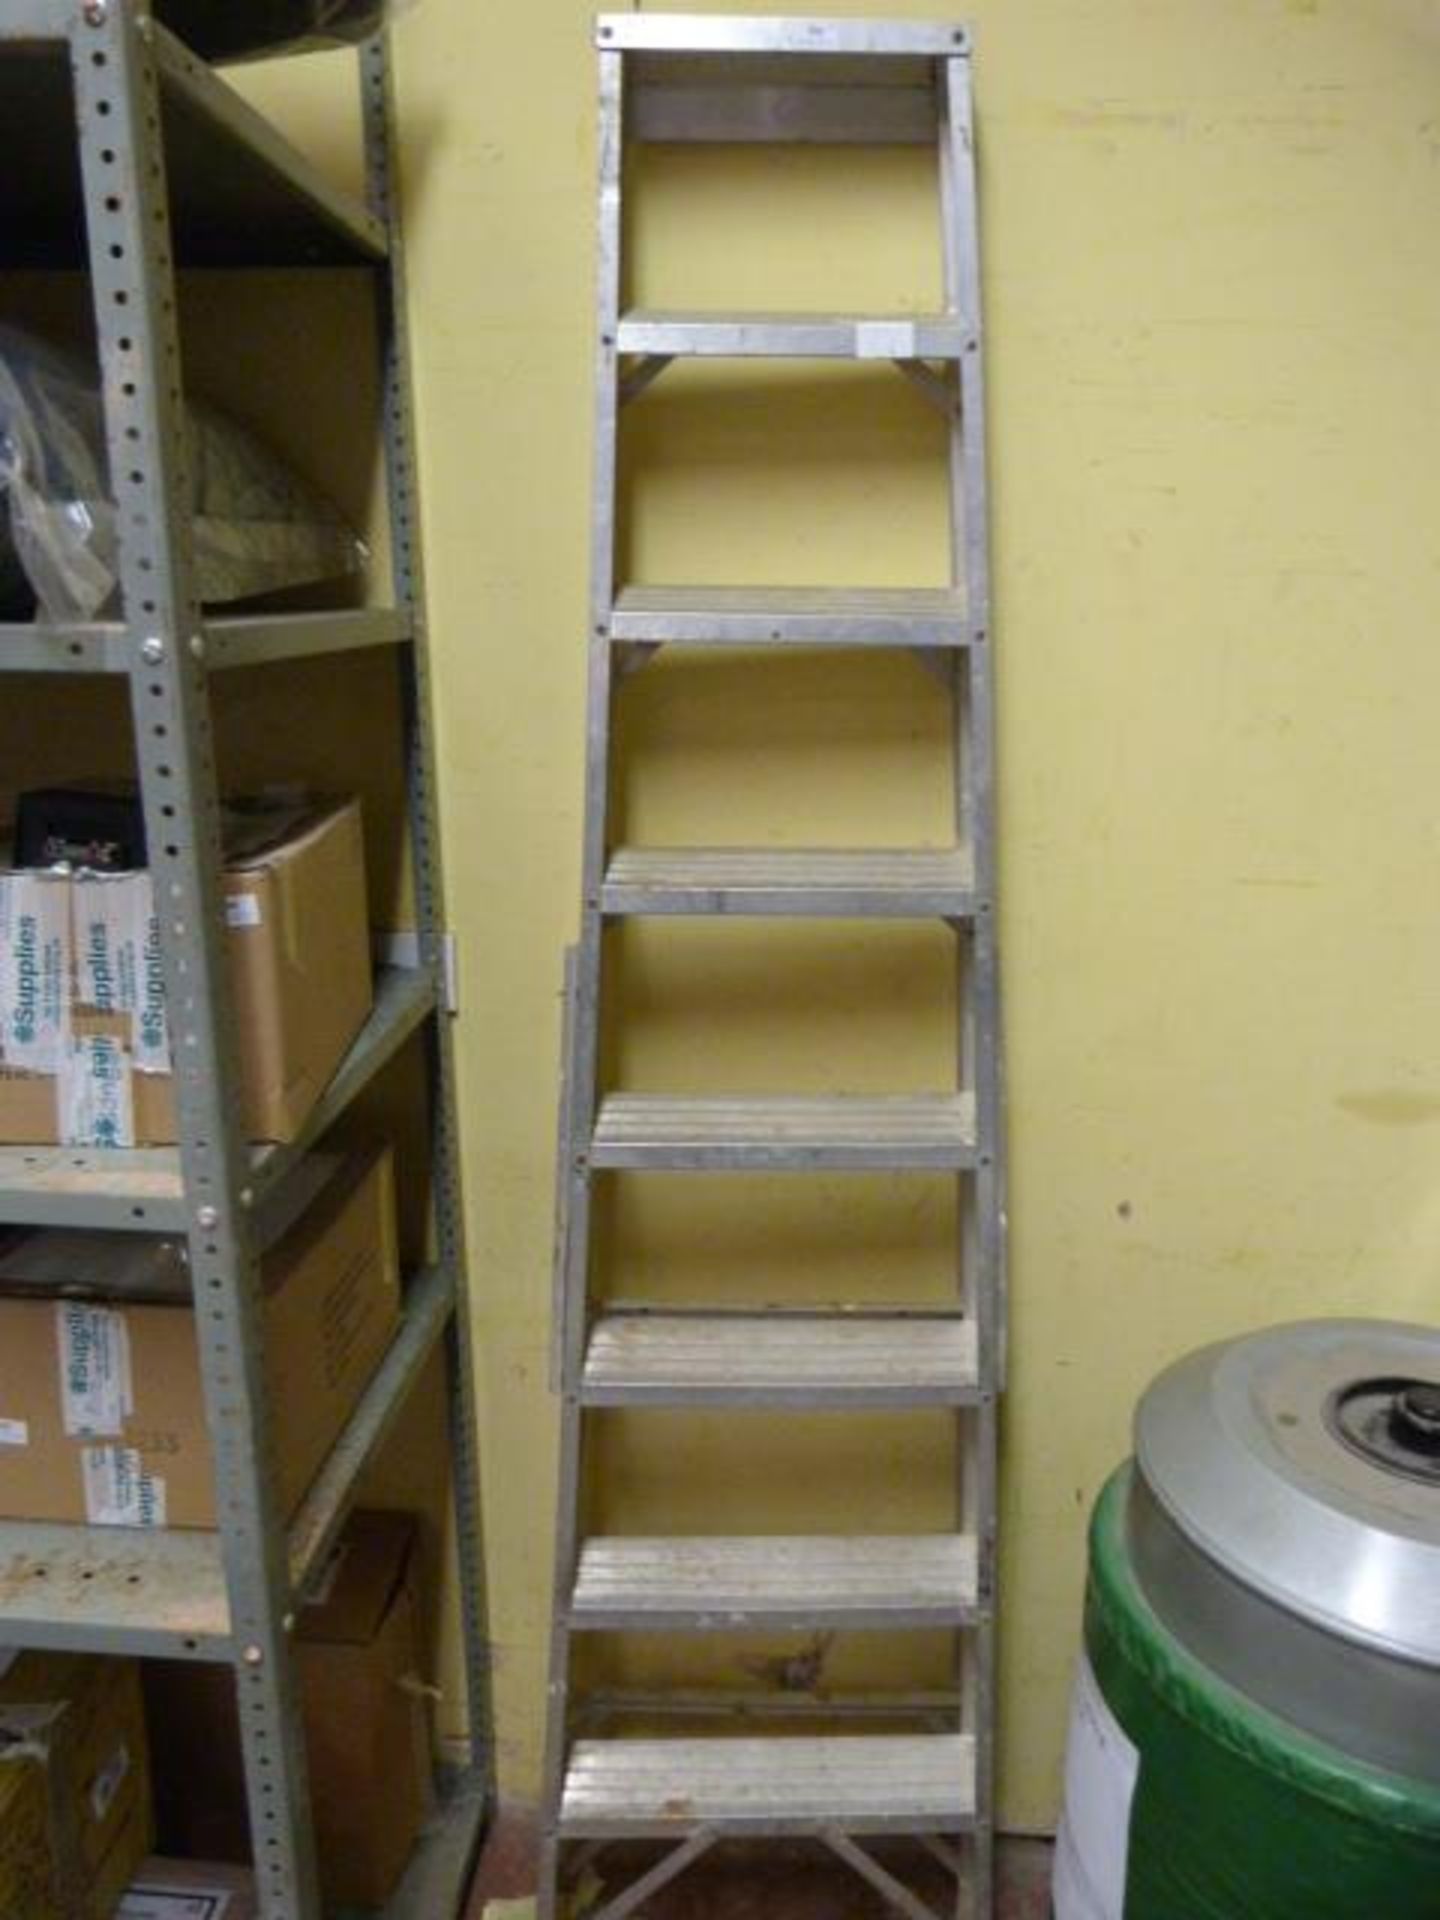 *Seven Tread Aluminium Step Ladder